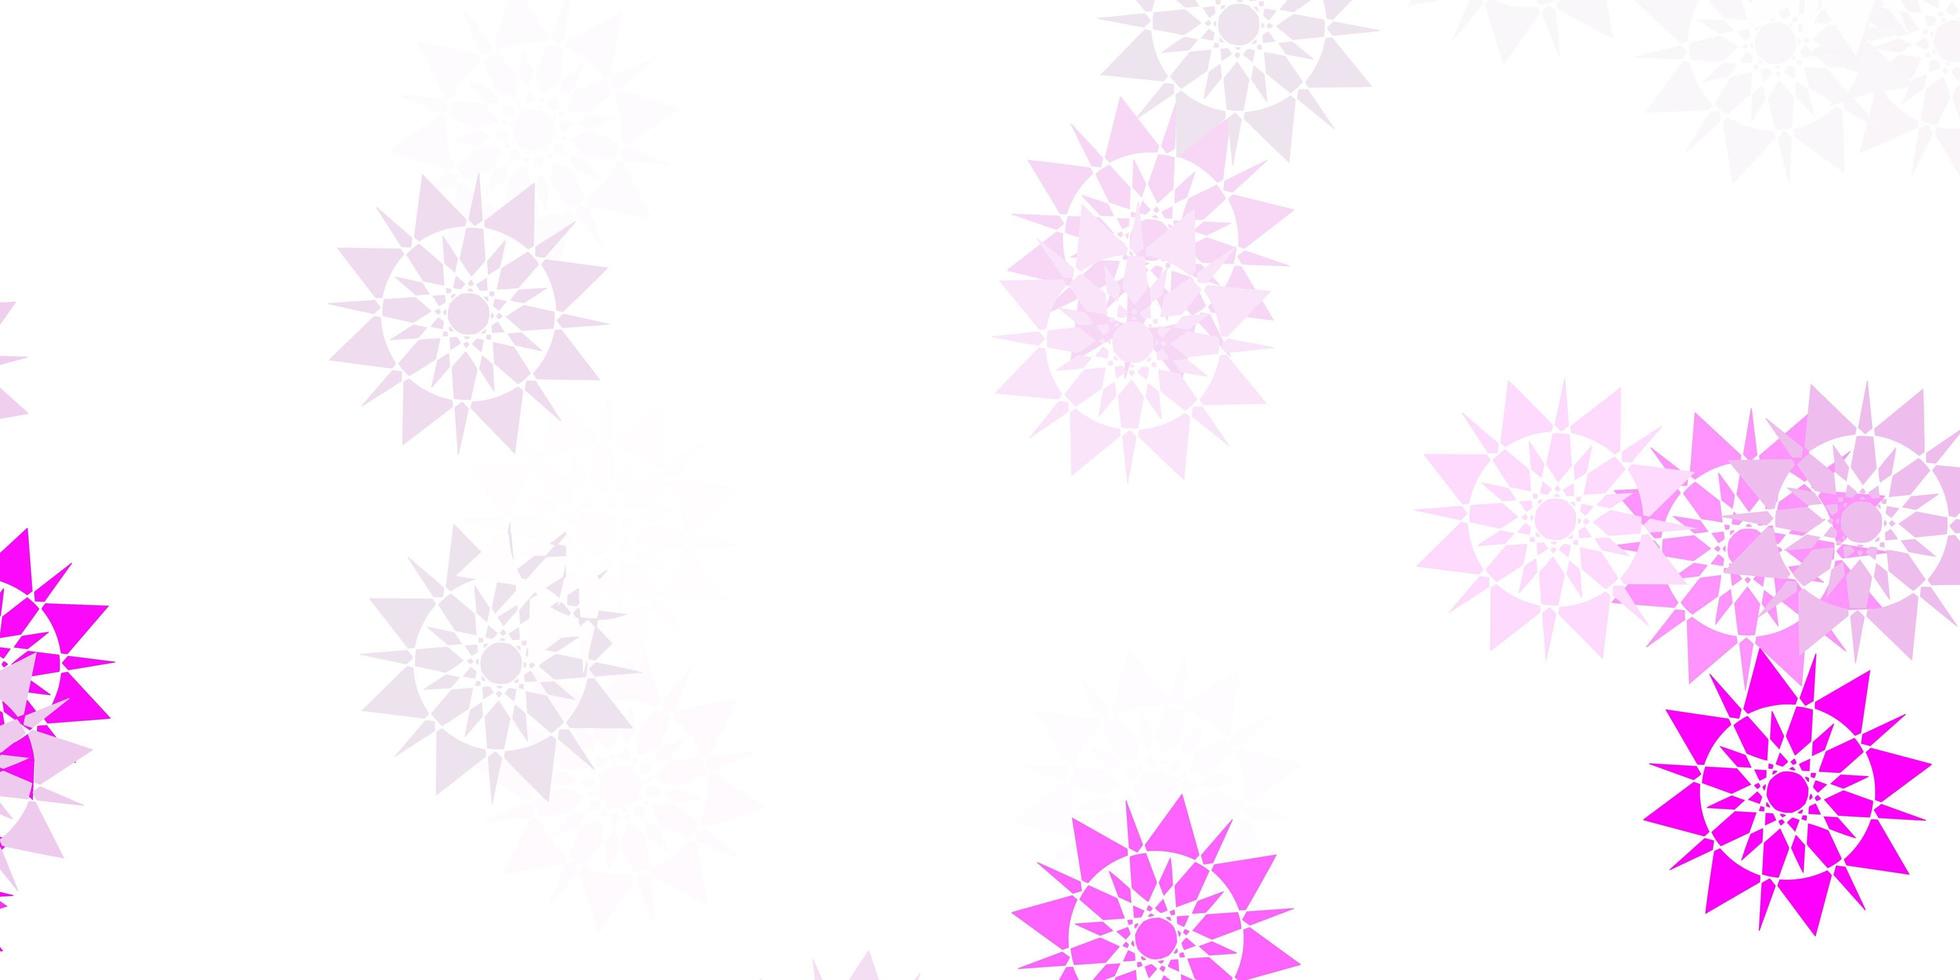 disposition de vecteur violet clair avec de beaux flocons de neige.